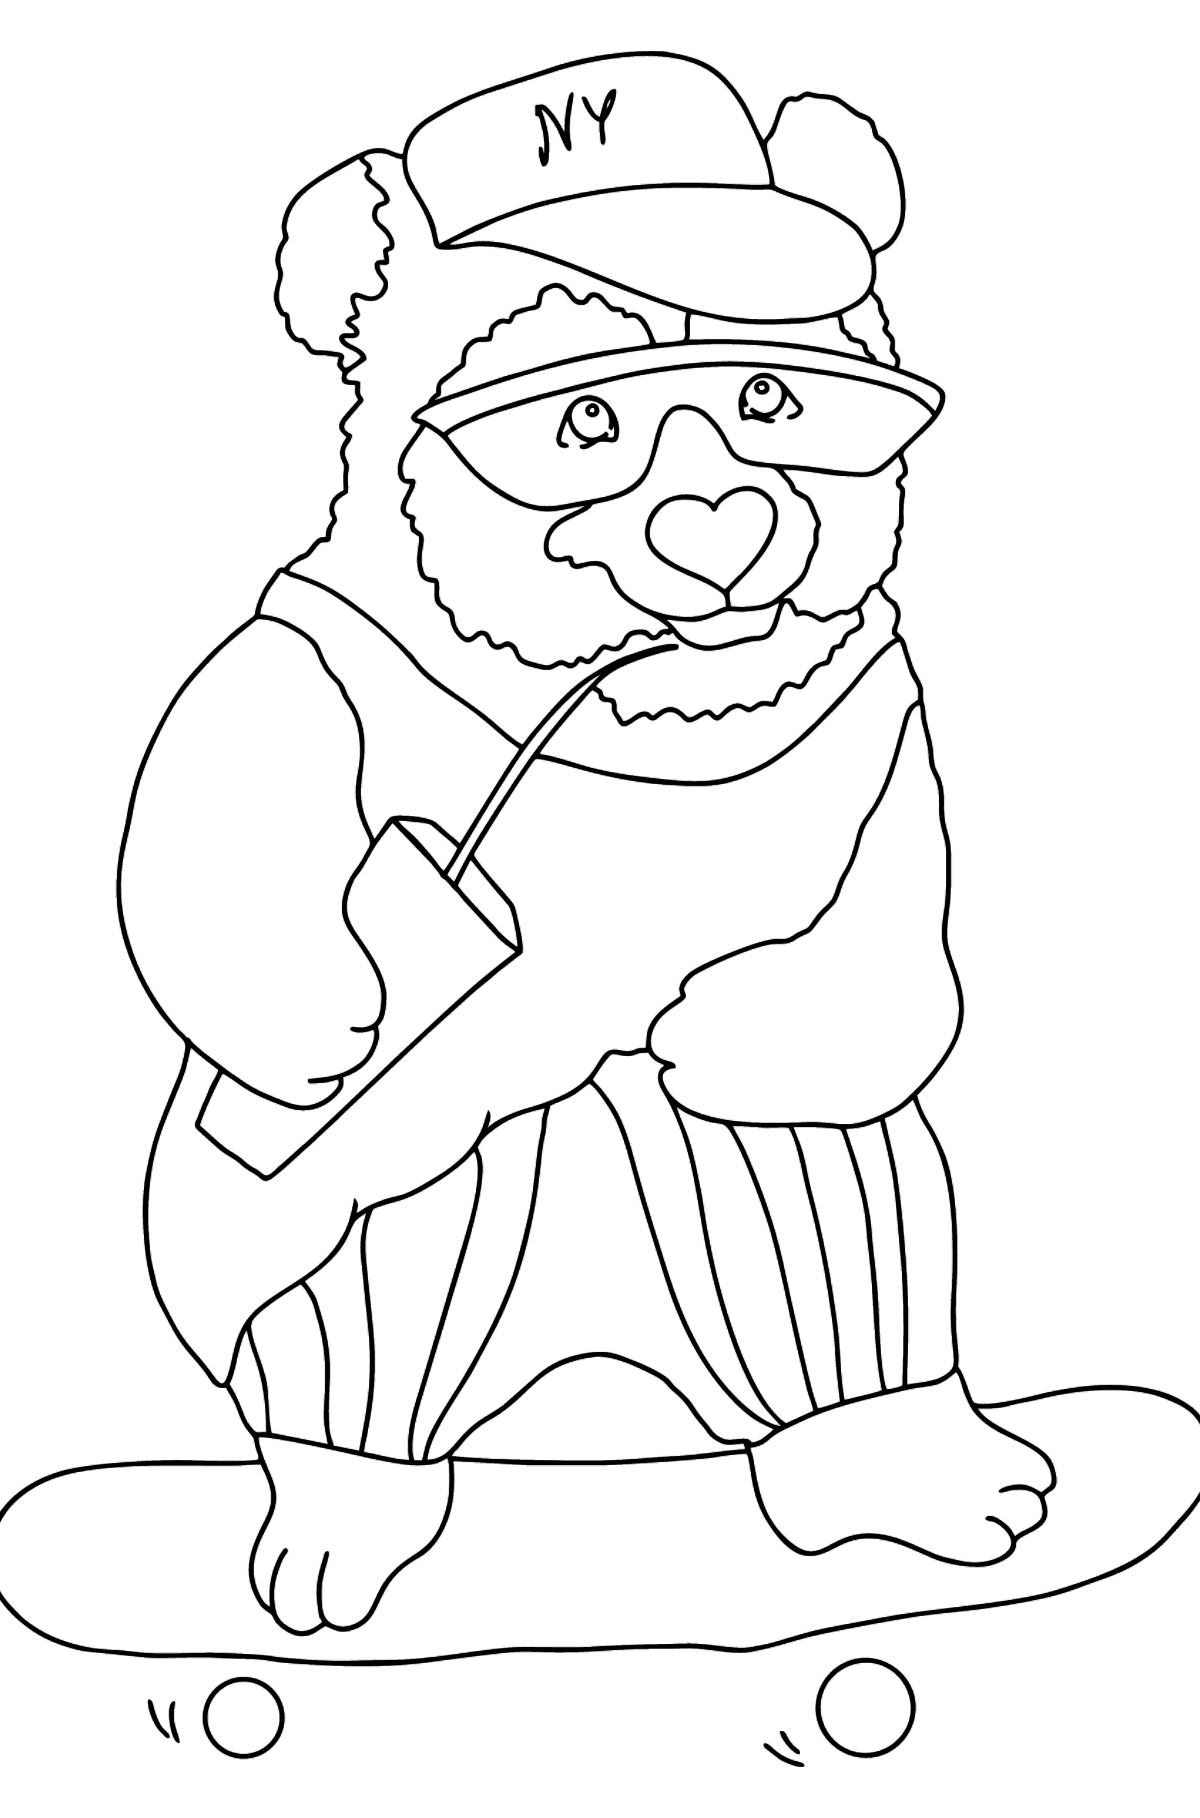 Tegning til farvning glad panda (vanskeligt) - Tegninger til farvelægning for børn